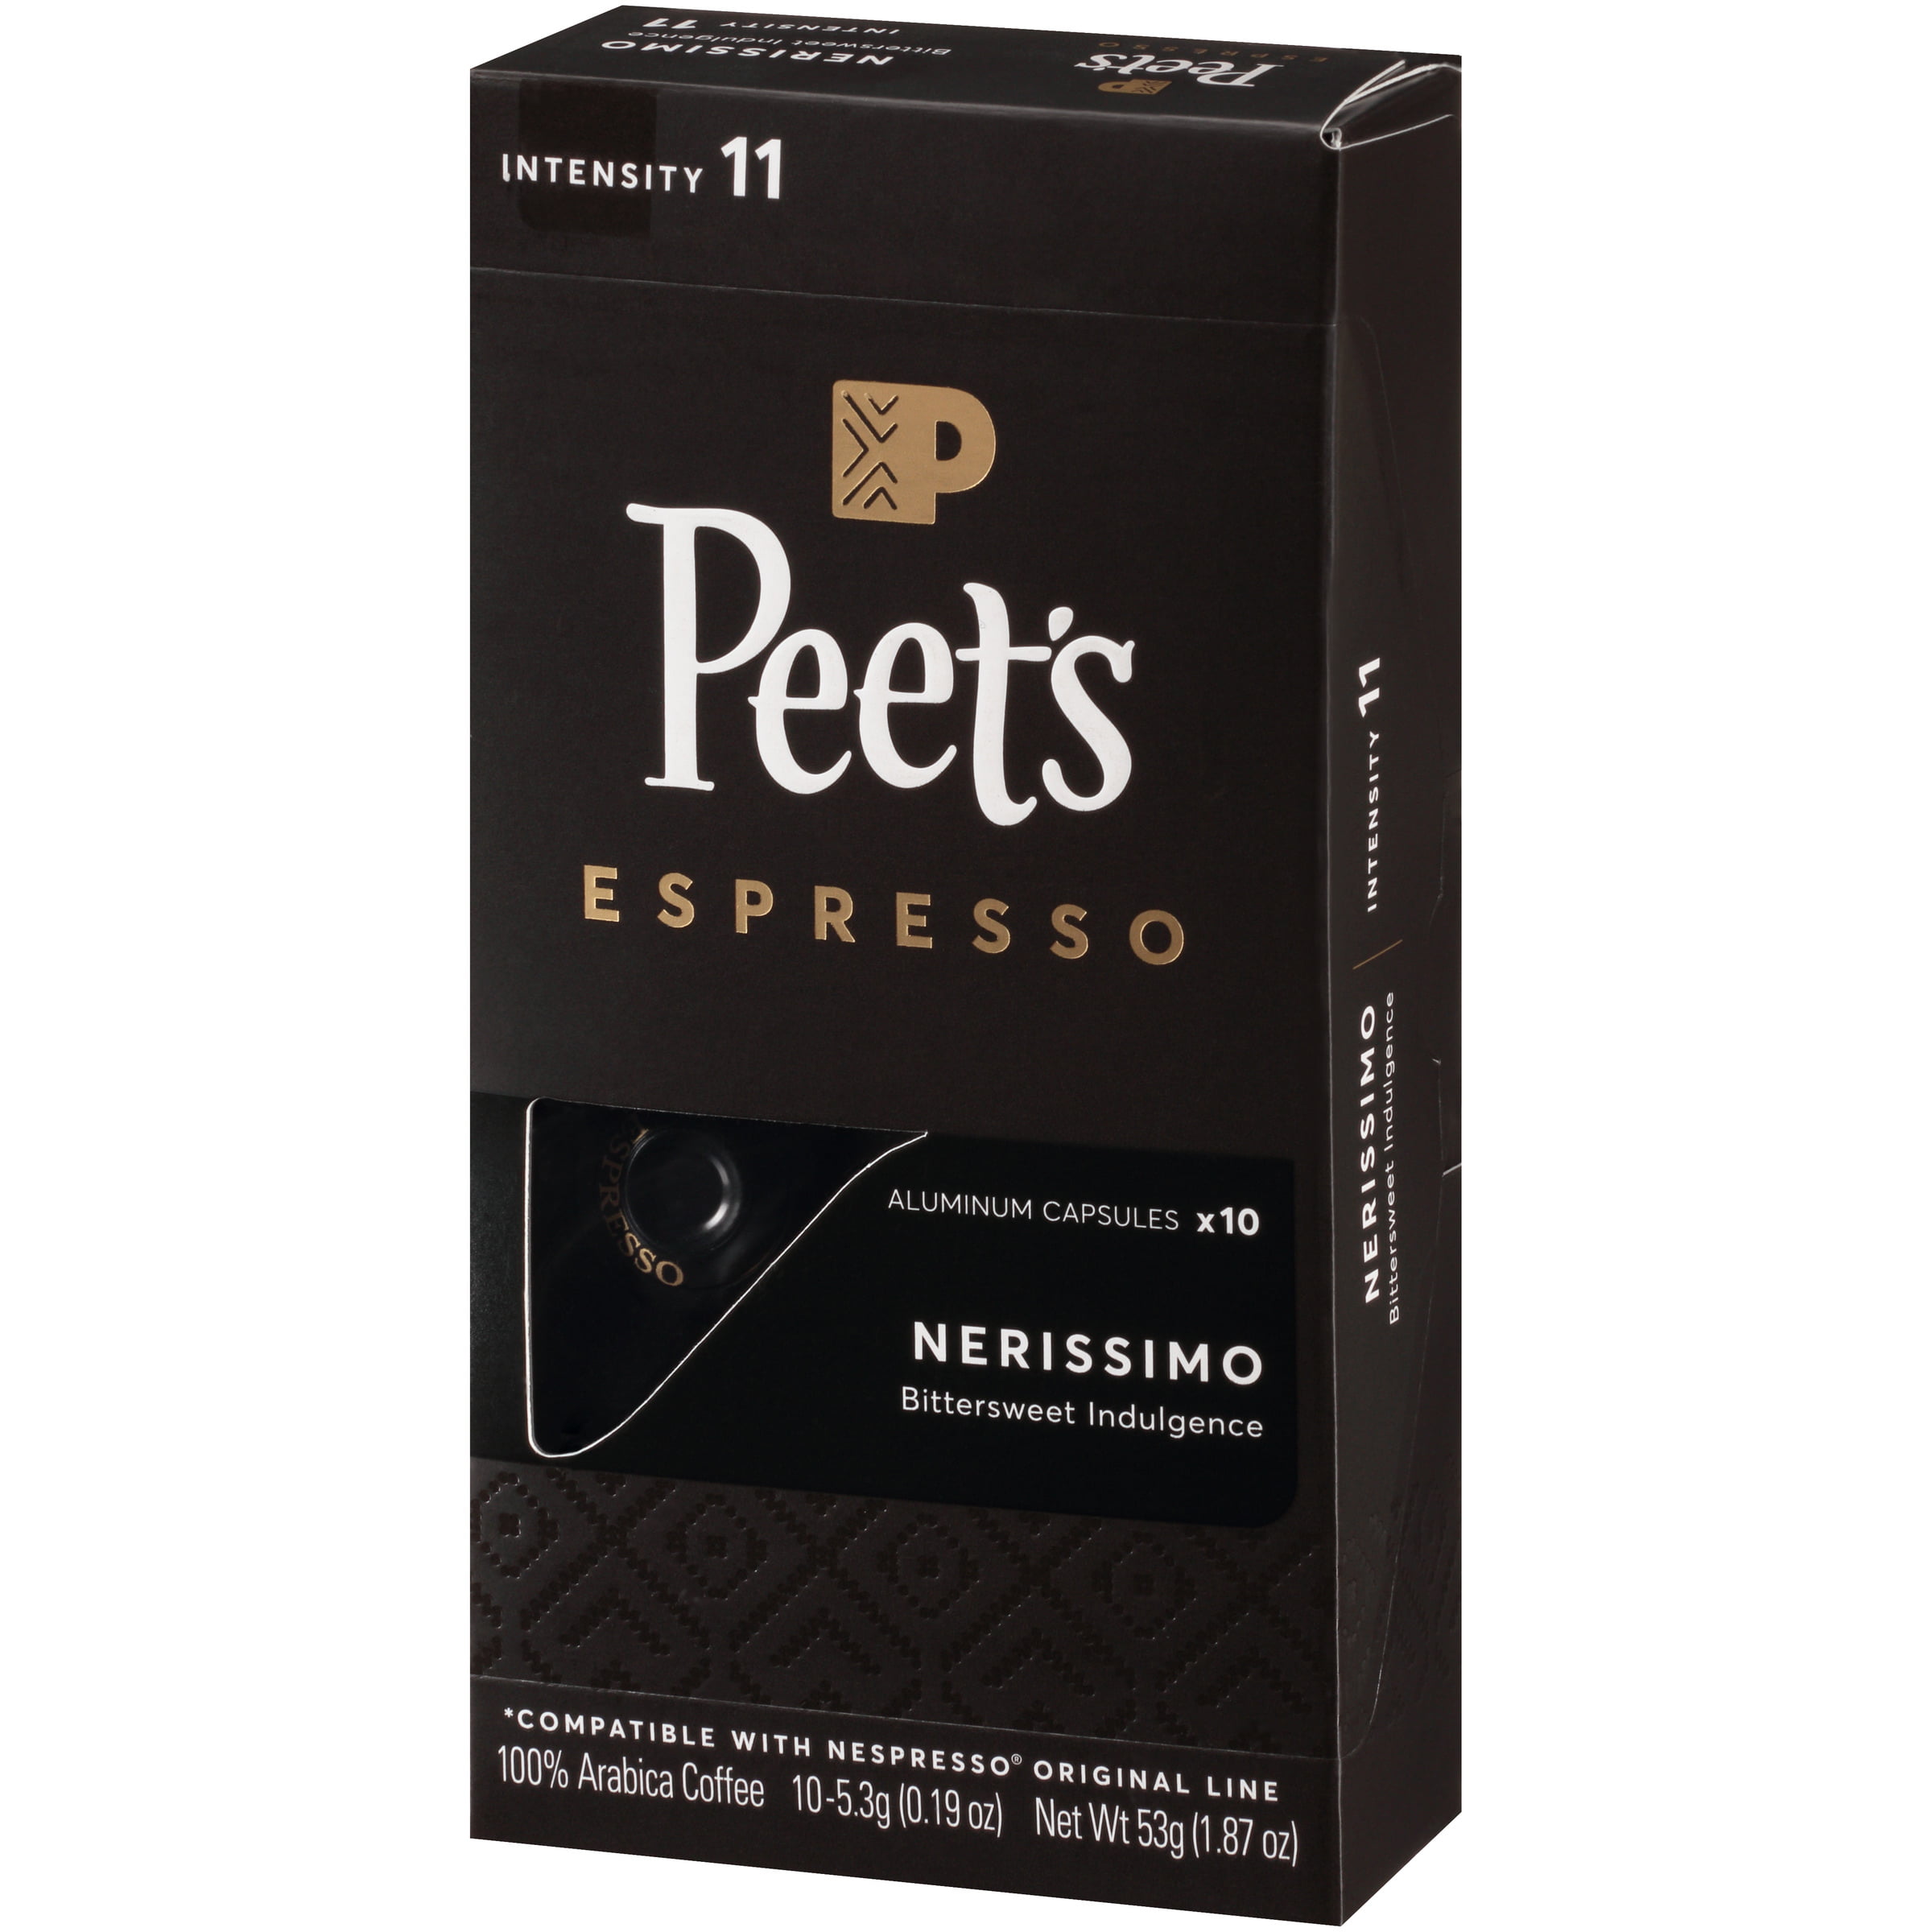 Photo 1 of Peet's Espresso Nerissimo Dark Roast Aluminum Capsules - 10ct/1.87oz exp date 01-2022